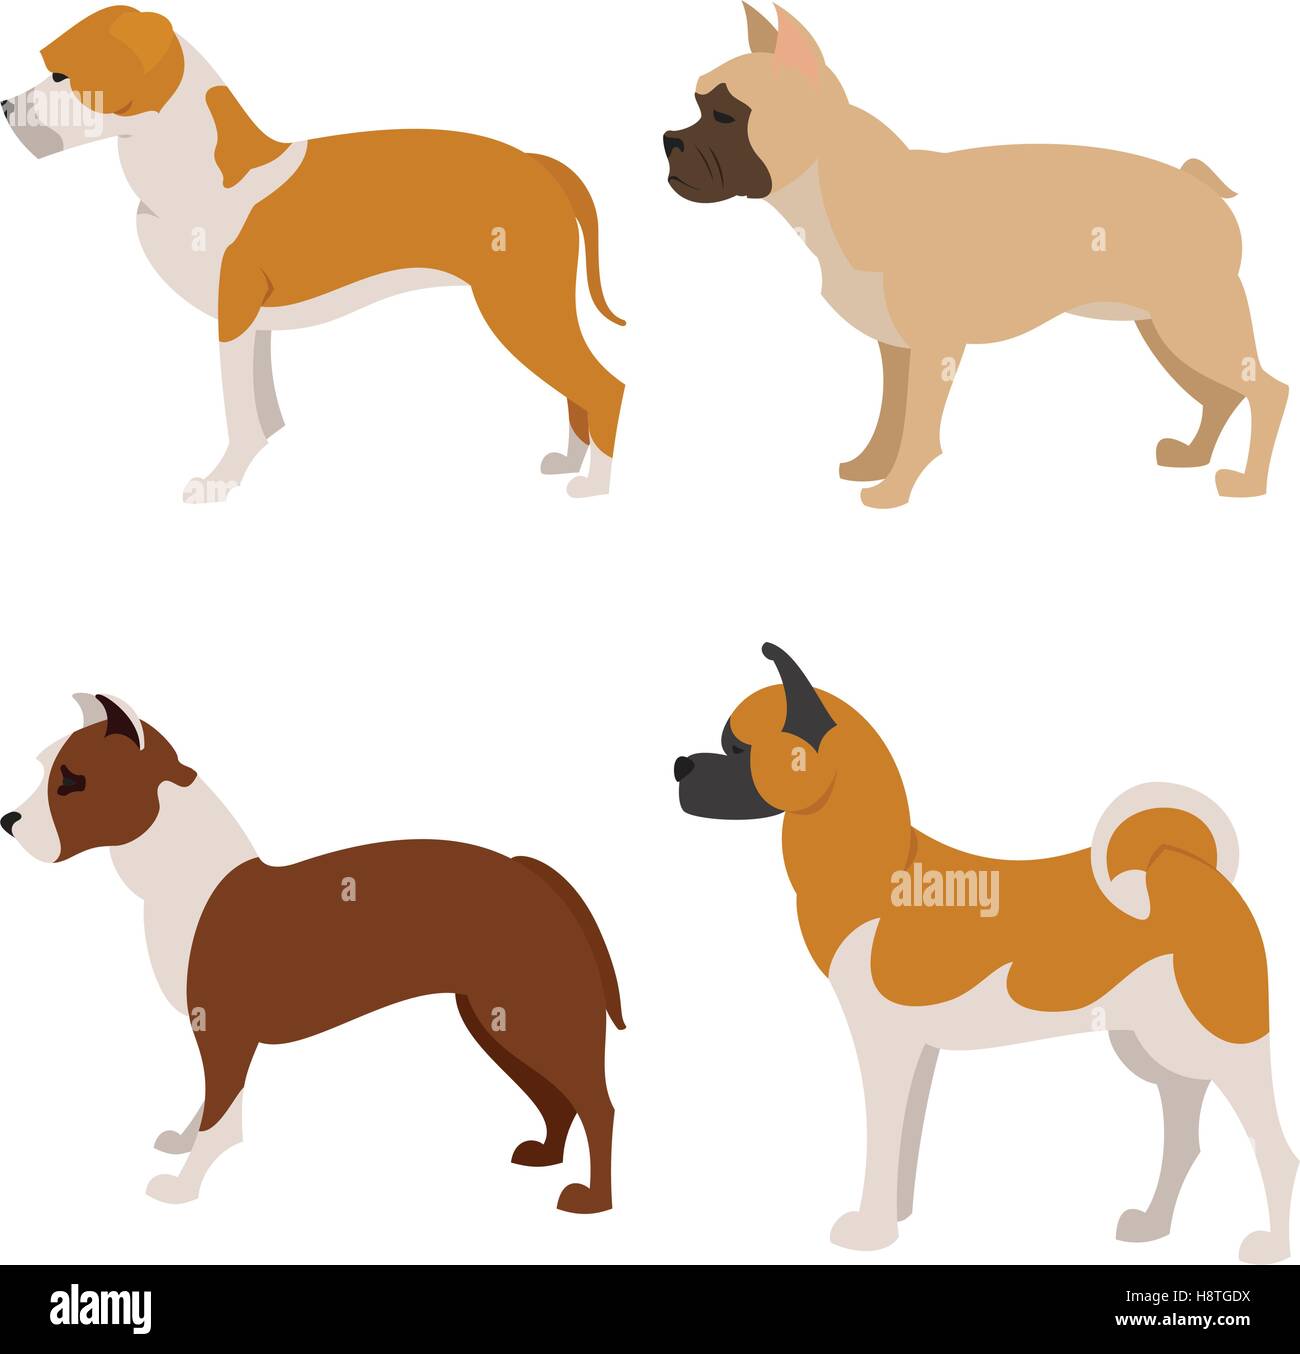 Collection de chiens de race bouledogue français, pittbull et Staffordshire terrier, vector illustration Illustration de Vecteur